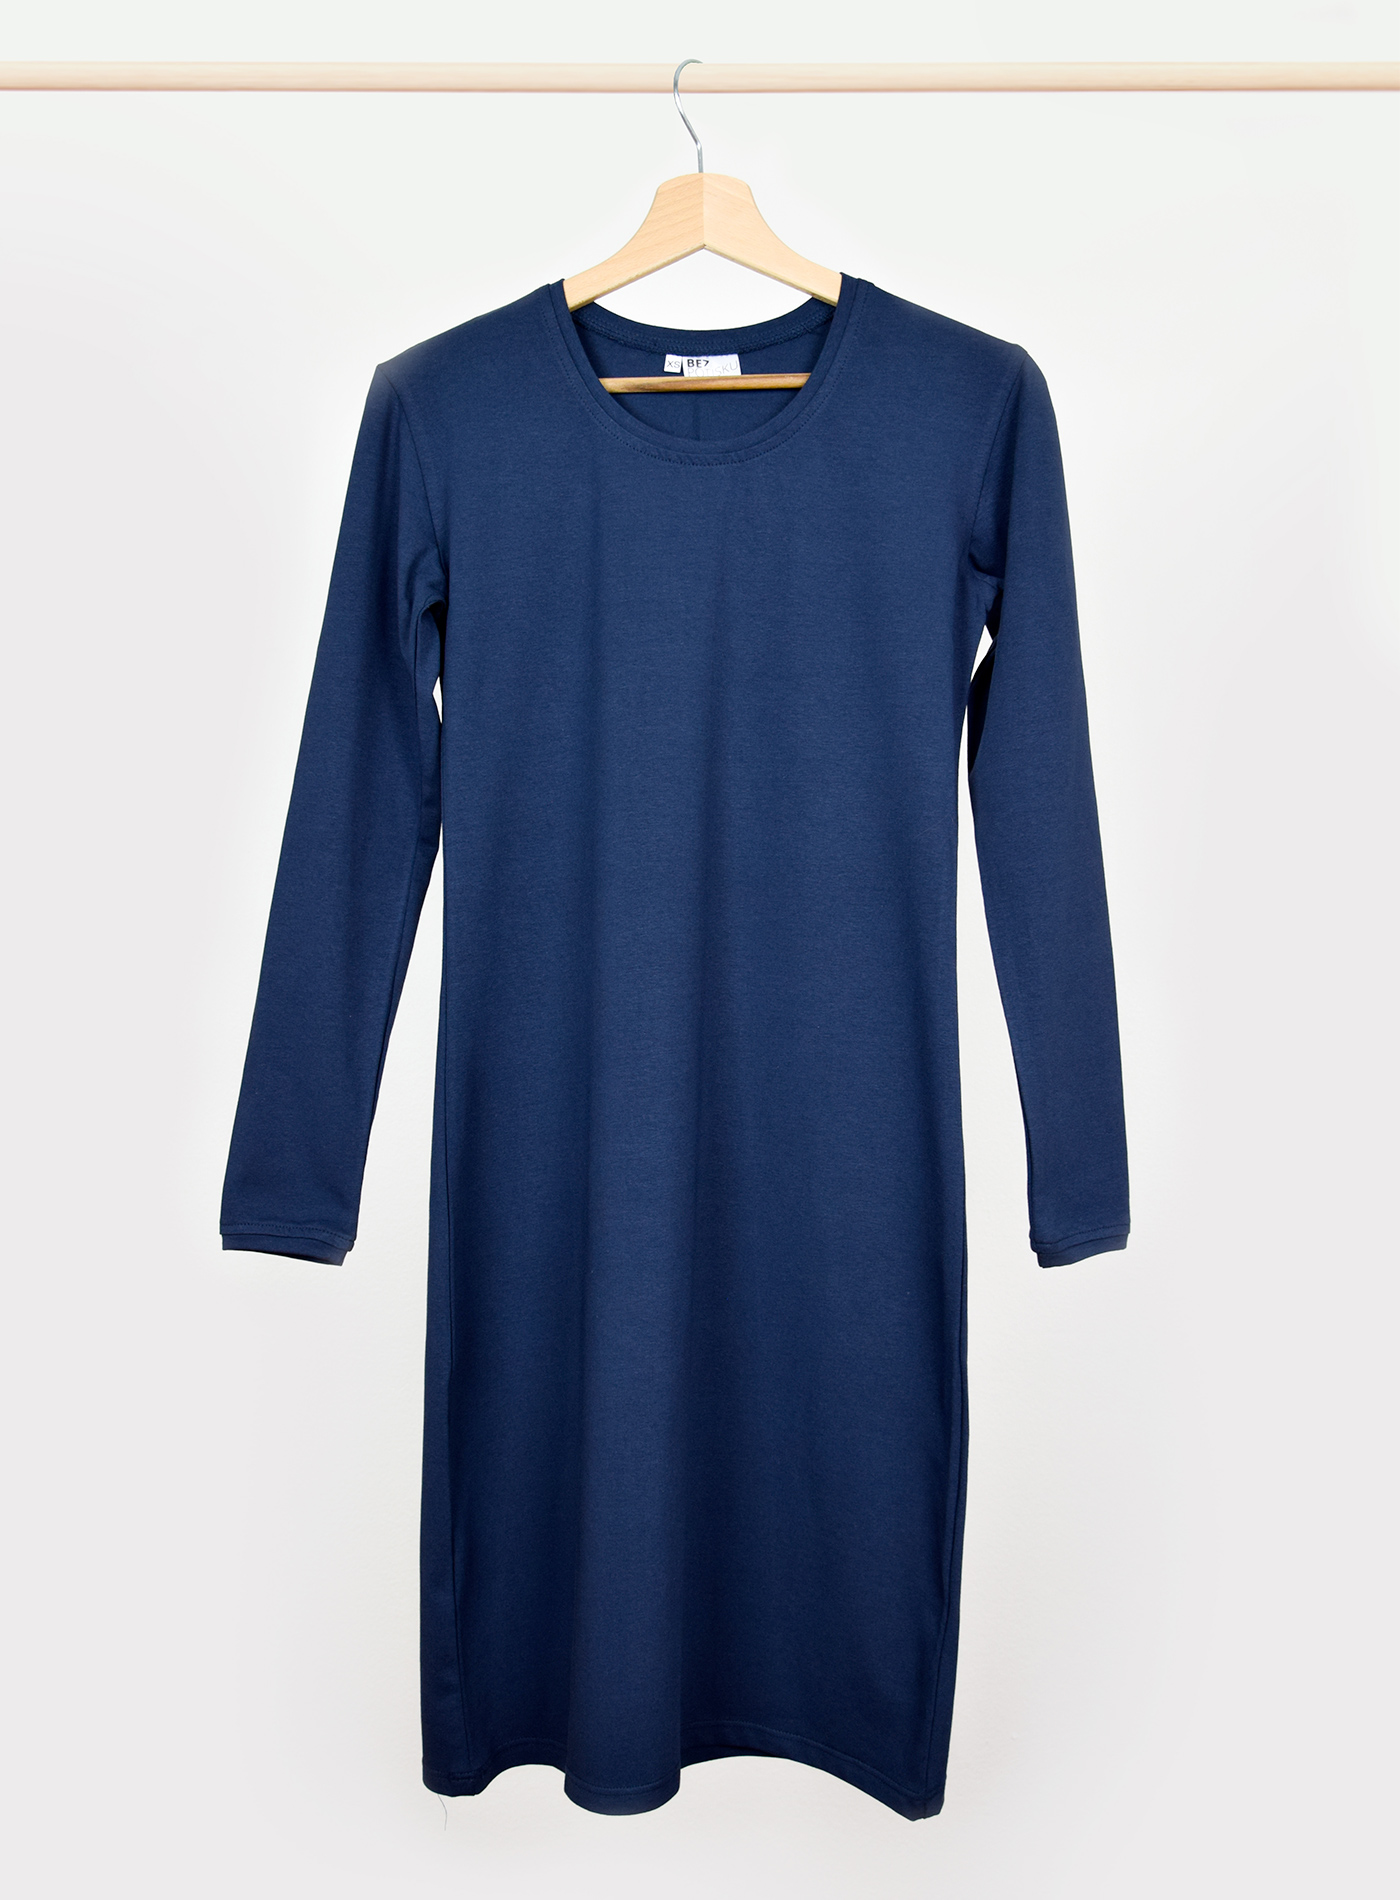 Dámské šaty s dlouhým rukávem BezPotisku Veronika - tmavě modrá XXL